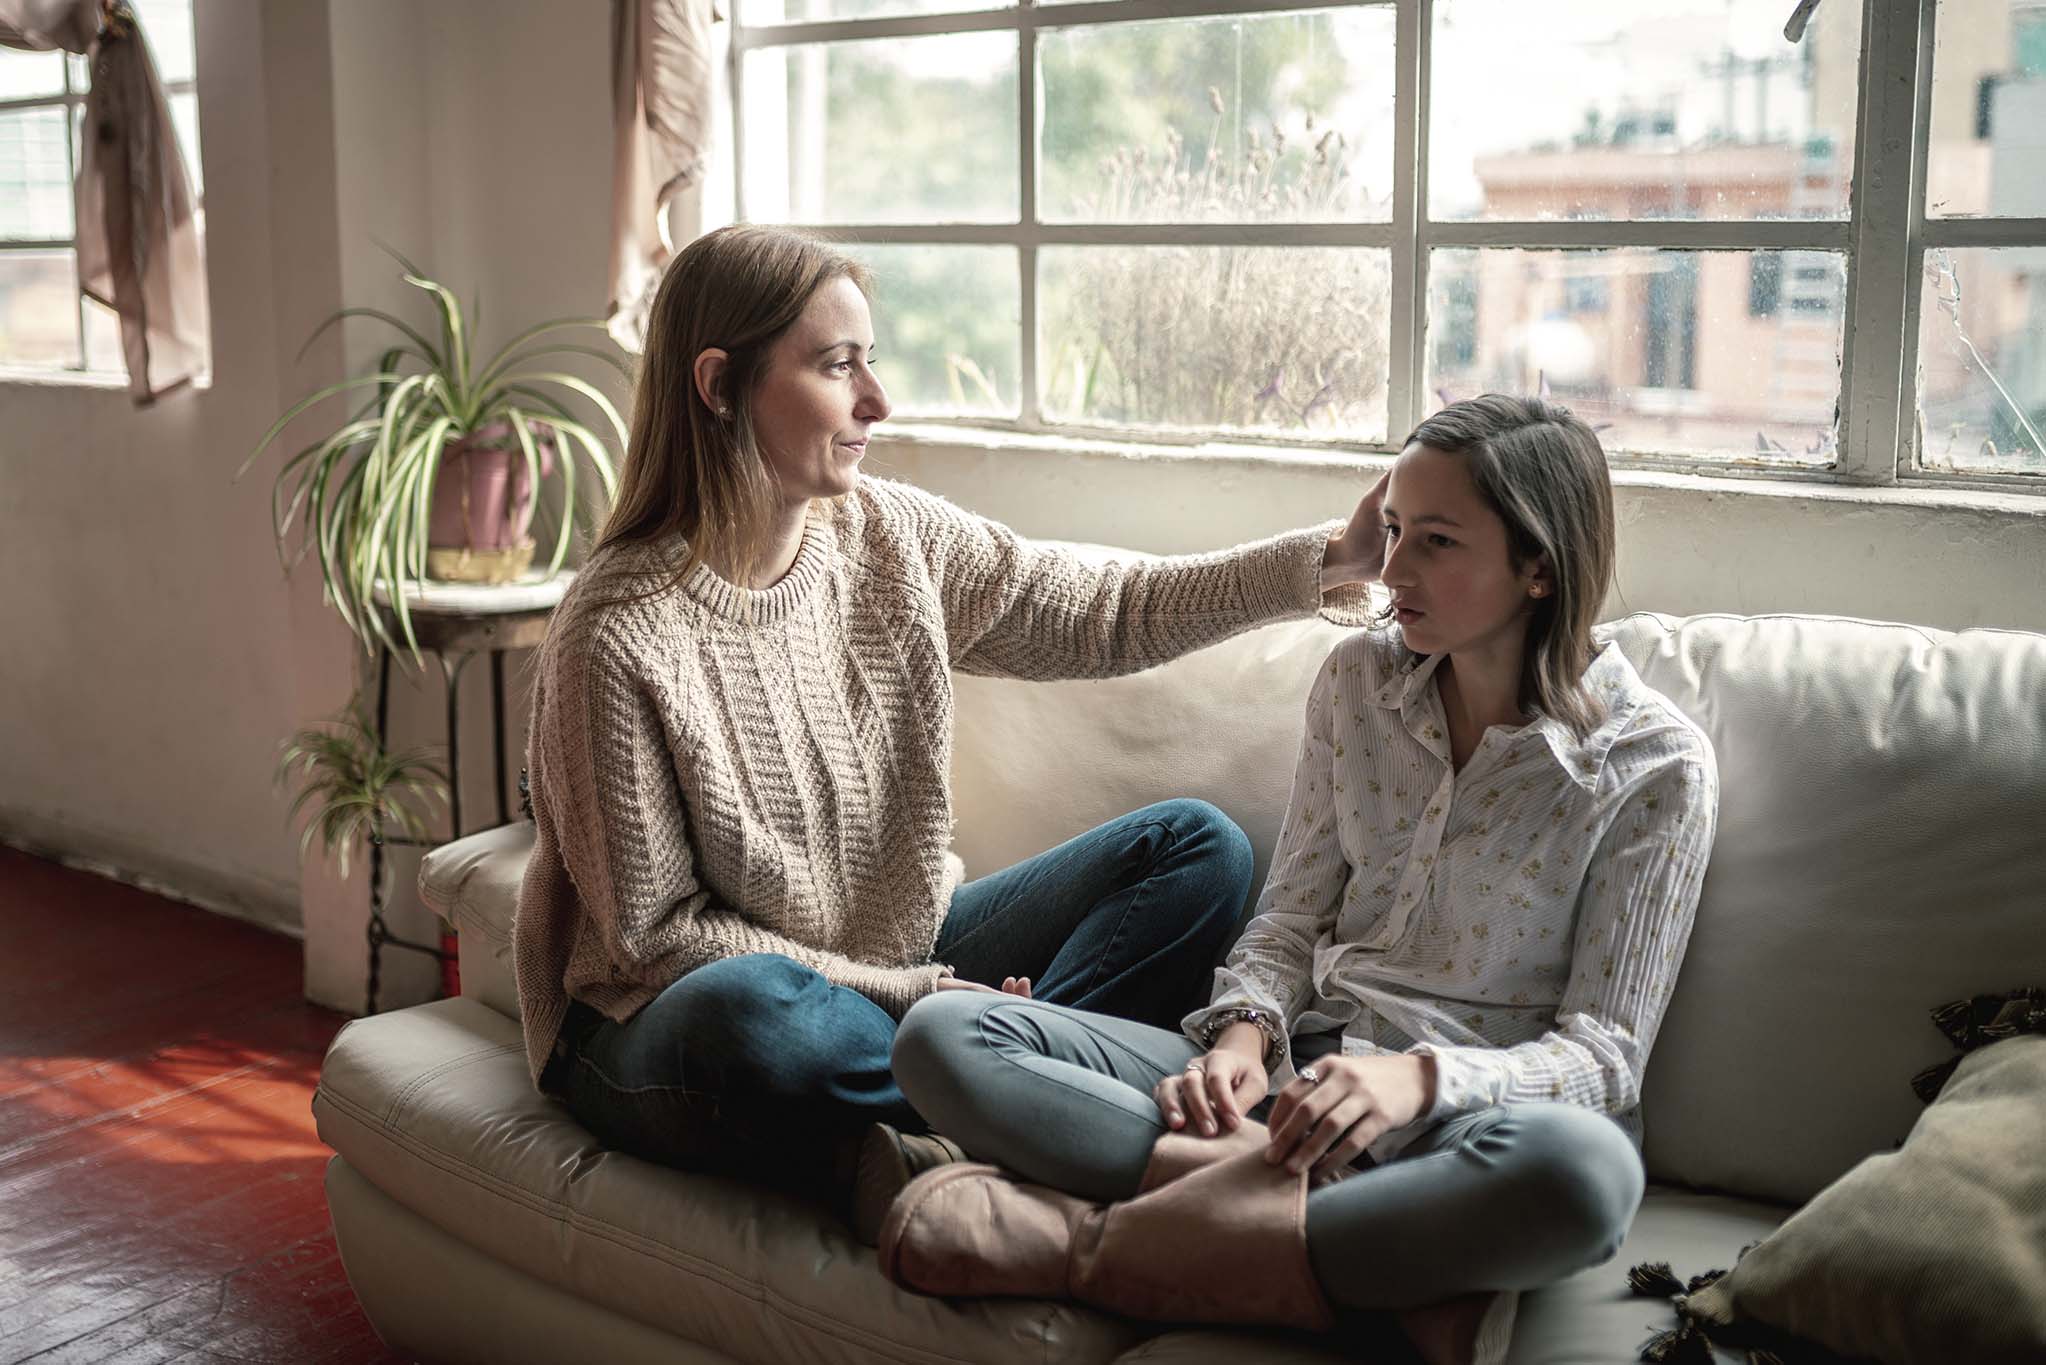 Eine junge Frau und ein Mädchen im Teenageralter sitzen auf einem Sofa. Die junge Frau streicht dem Mädchen über den Kopf.